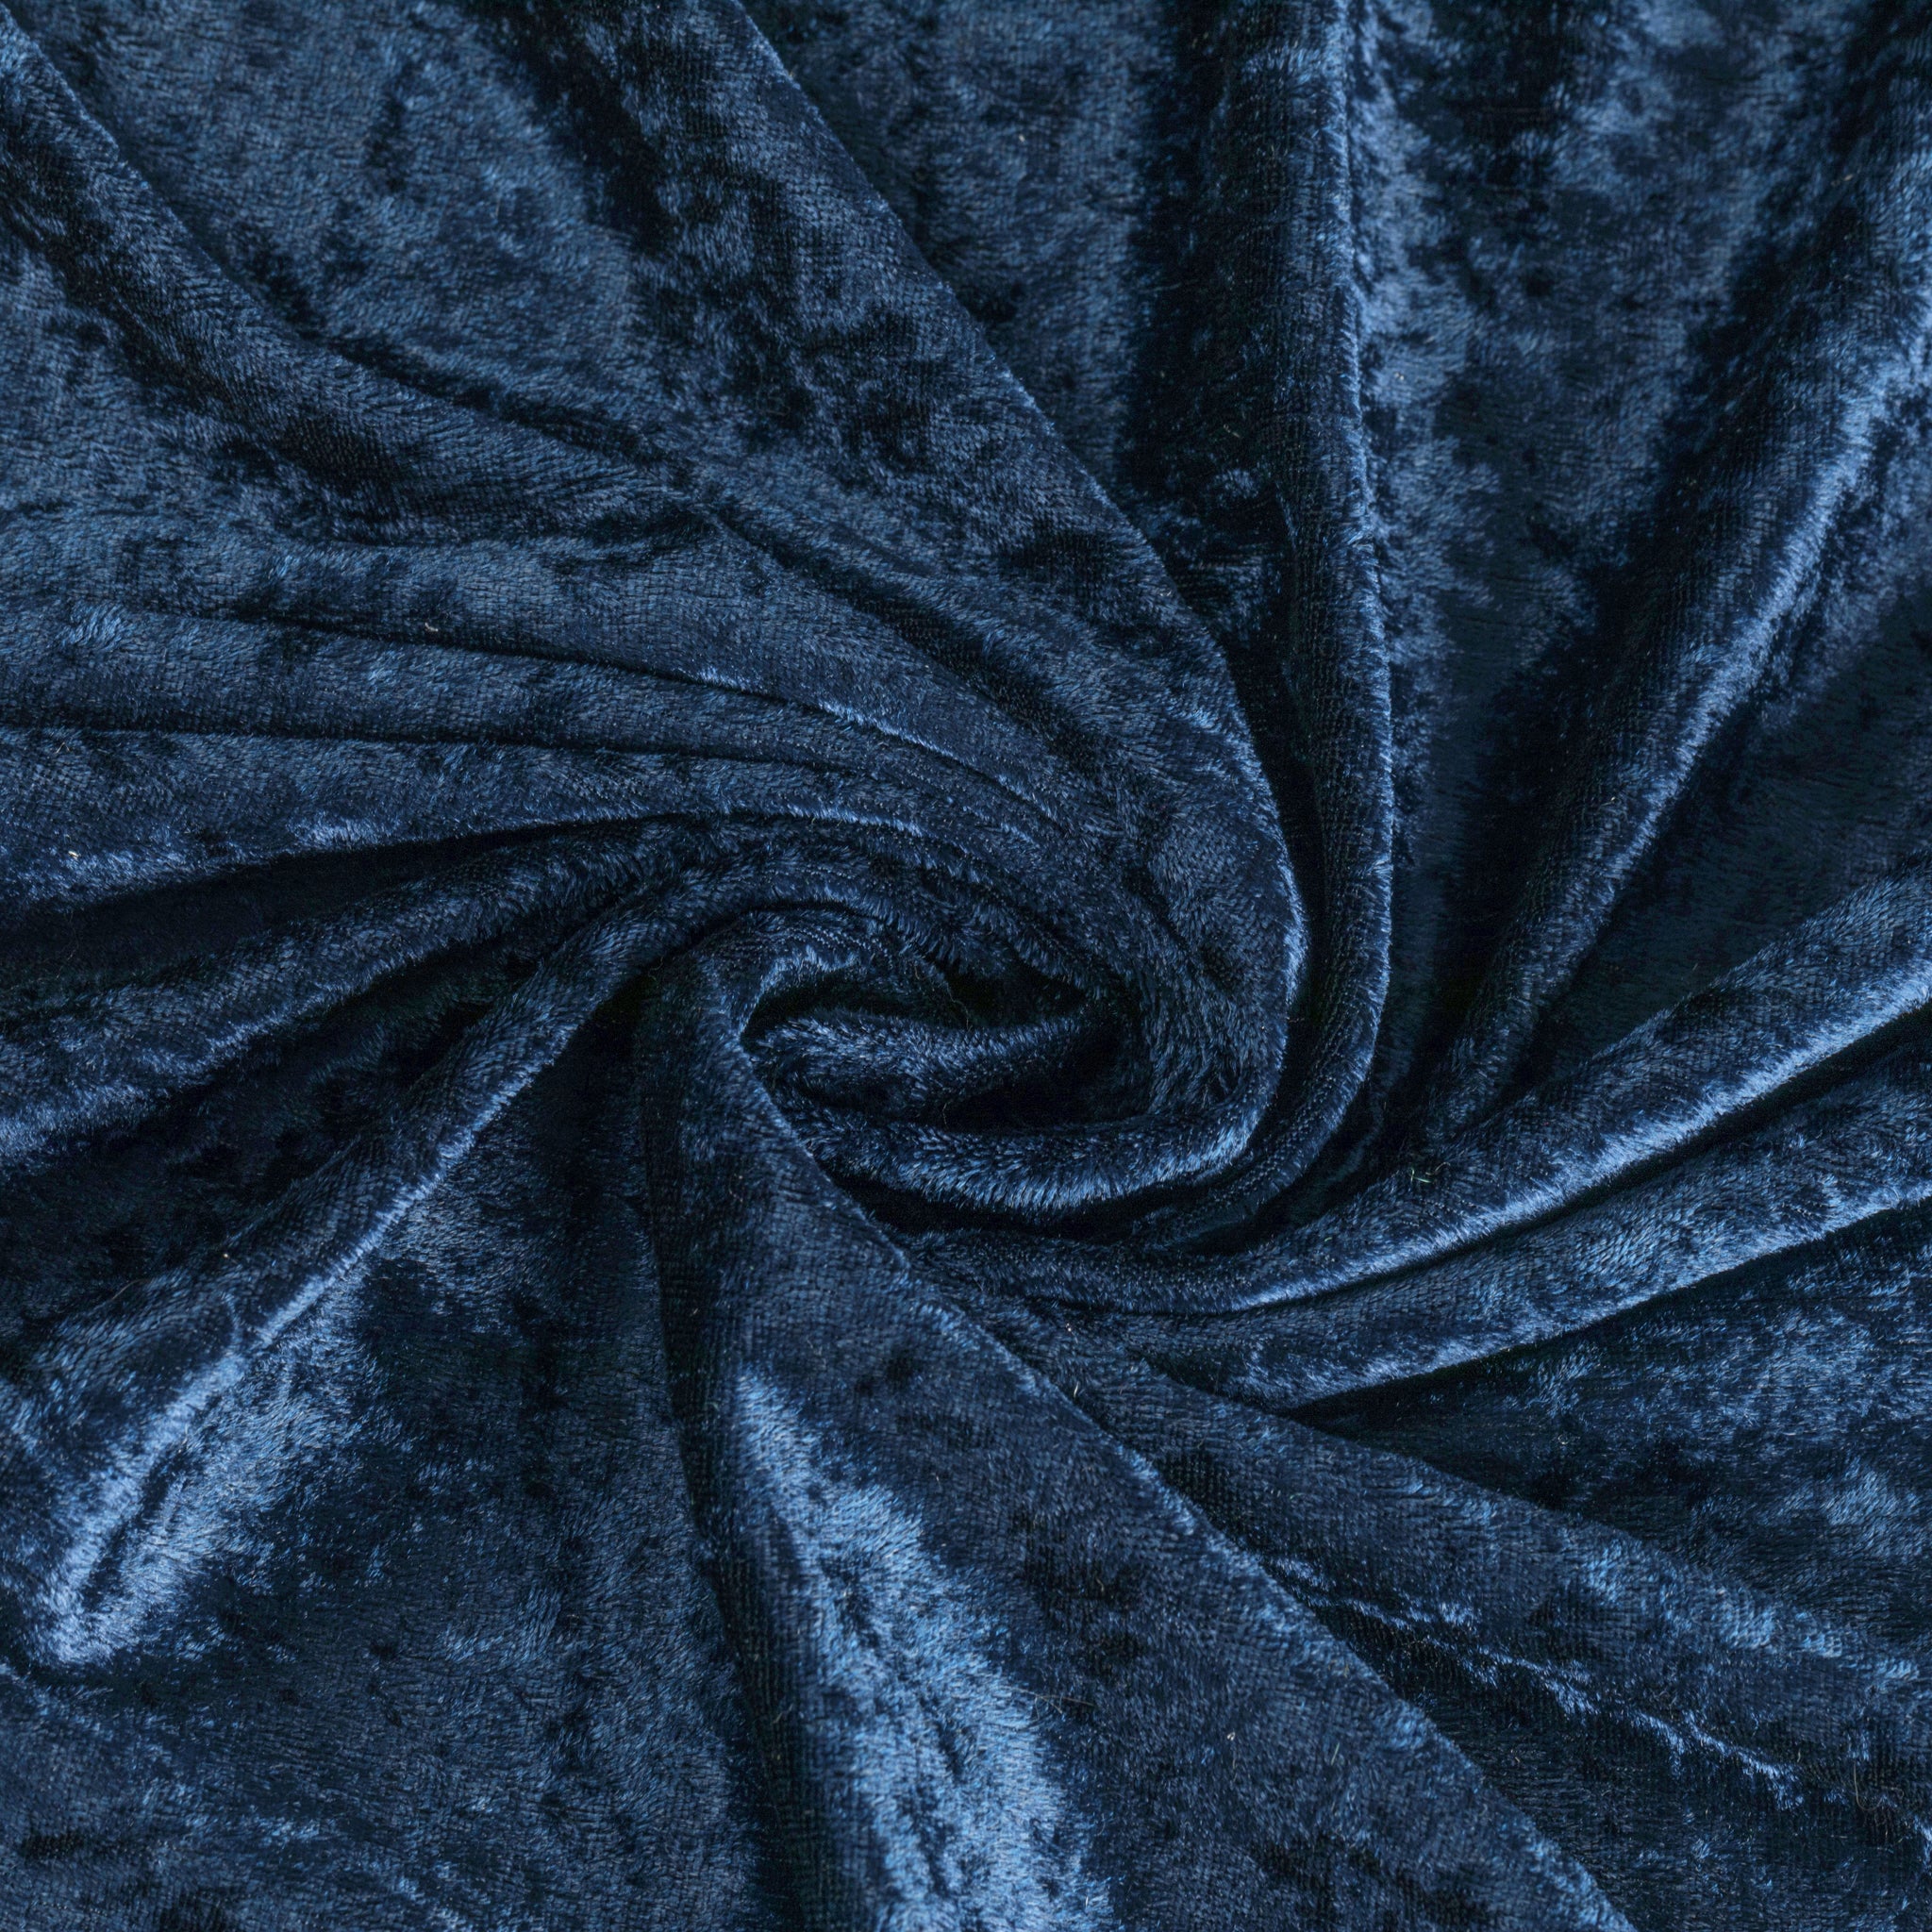 10 yards Velvet Fabric Roll - Navy Blue